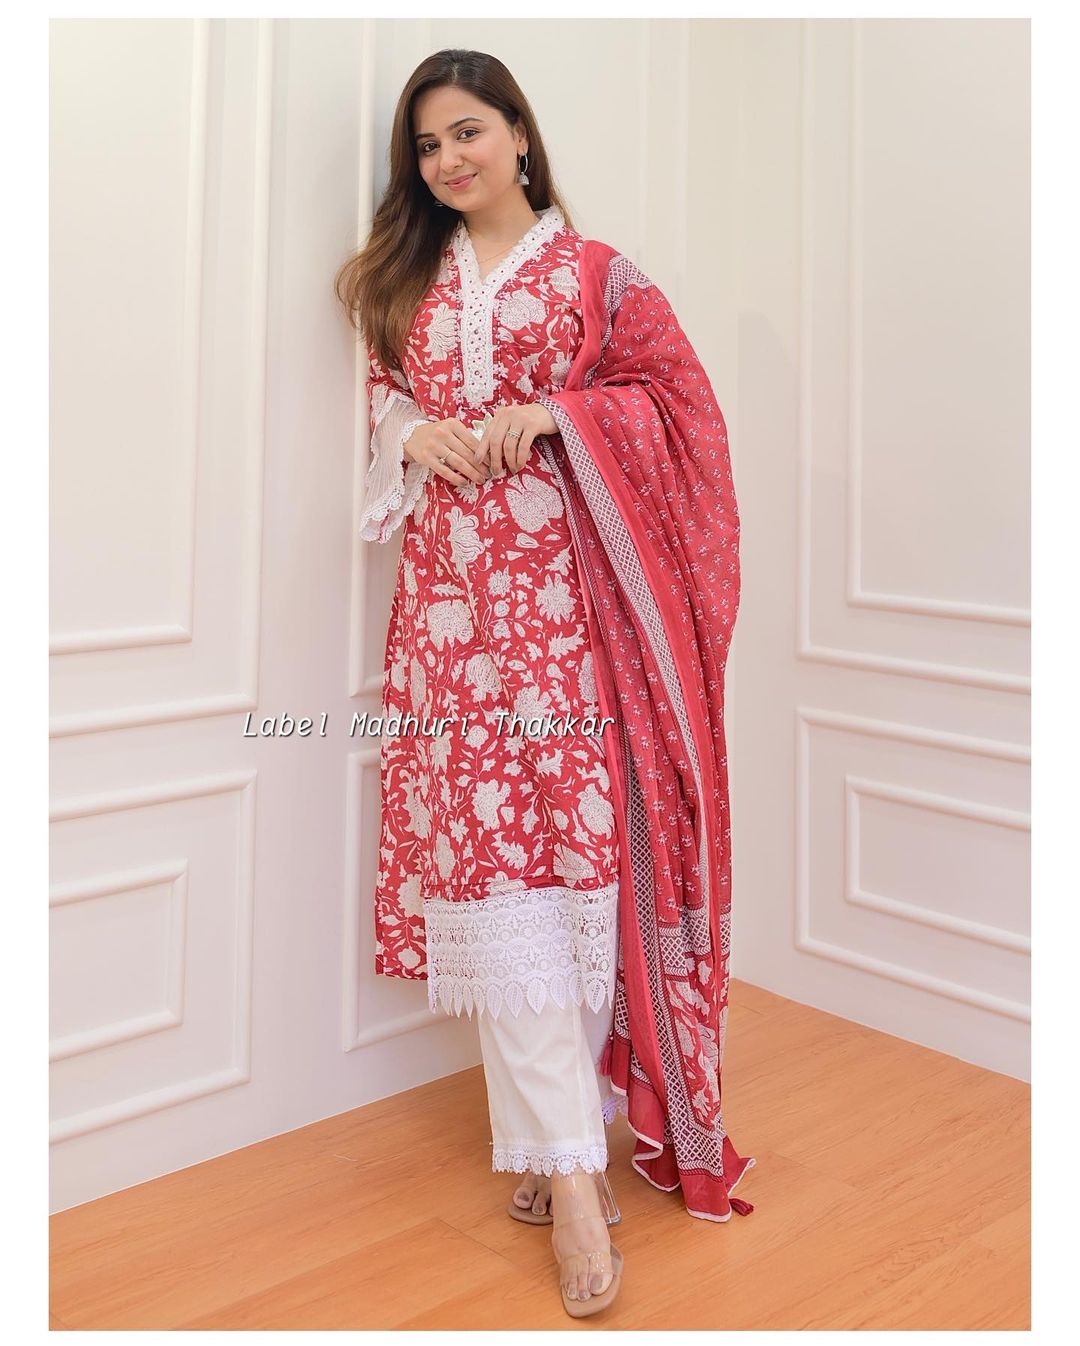 250+ Latest Designer Kurtis for Wedding (2021) Stylish Marriage Designs |  Indian fashion, Indian fashion dresses, Stylish dresses